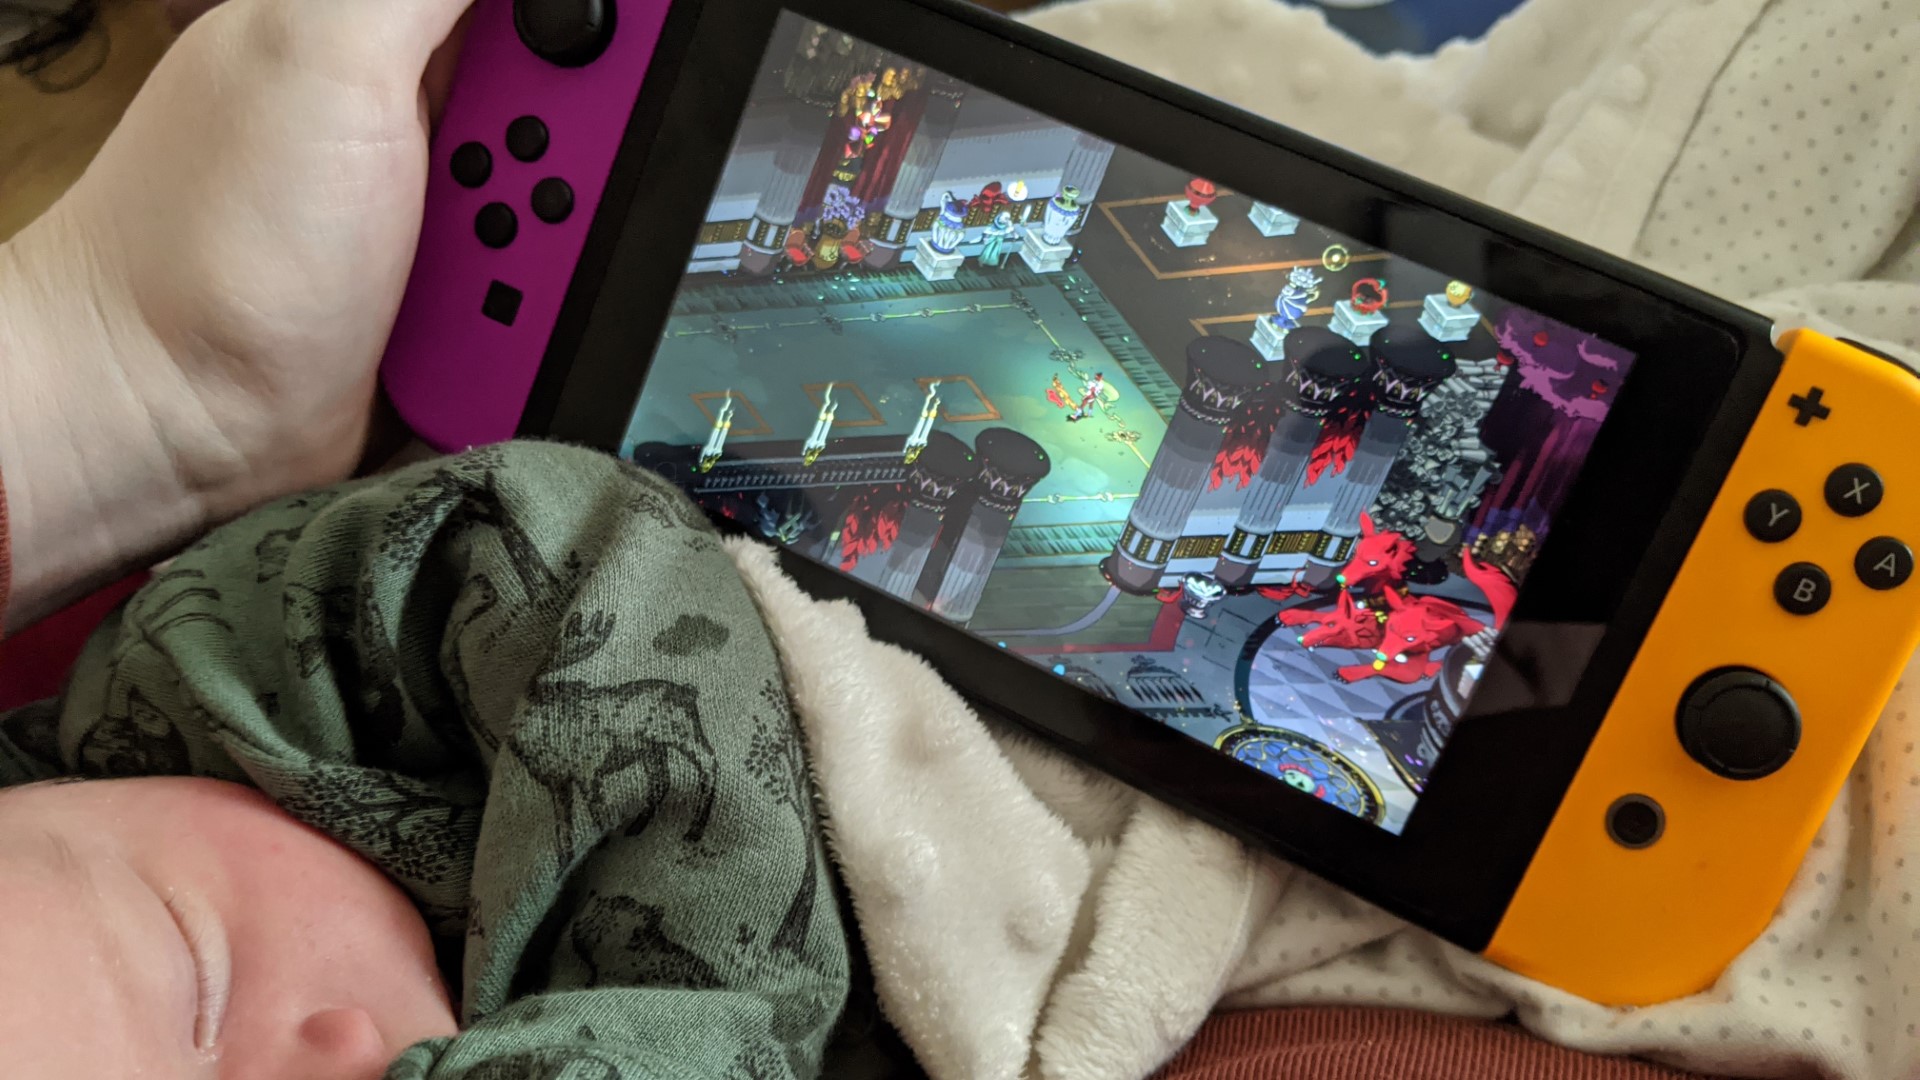 Hades auf Nintendo Switch spielen, während das Neugeborene schläft